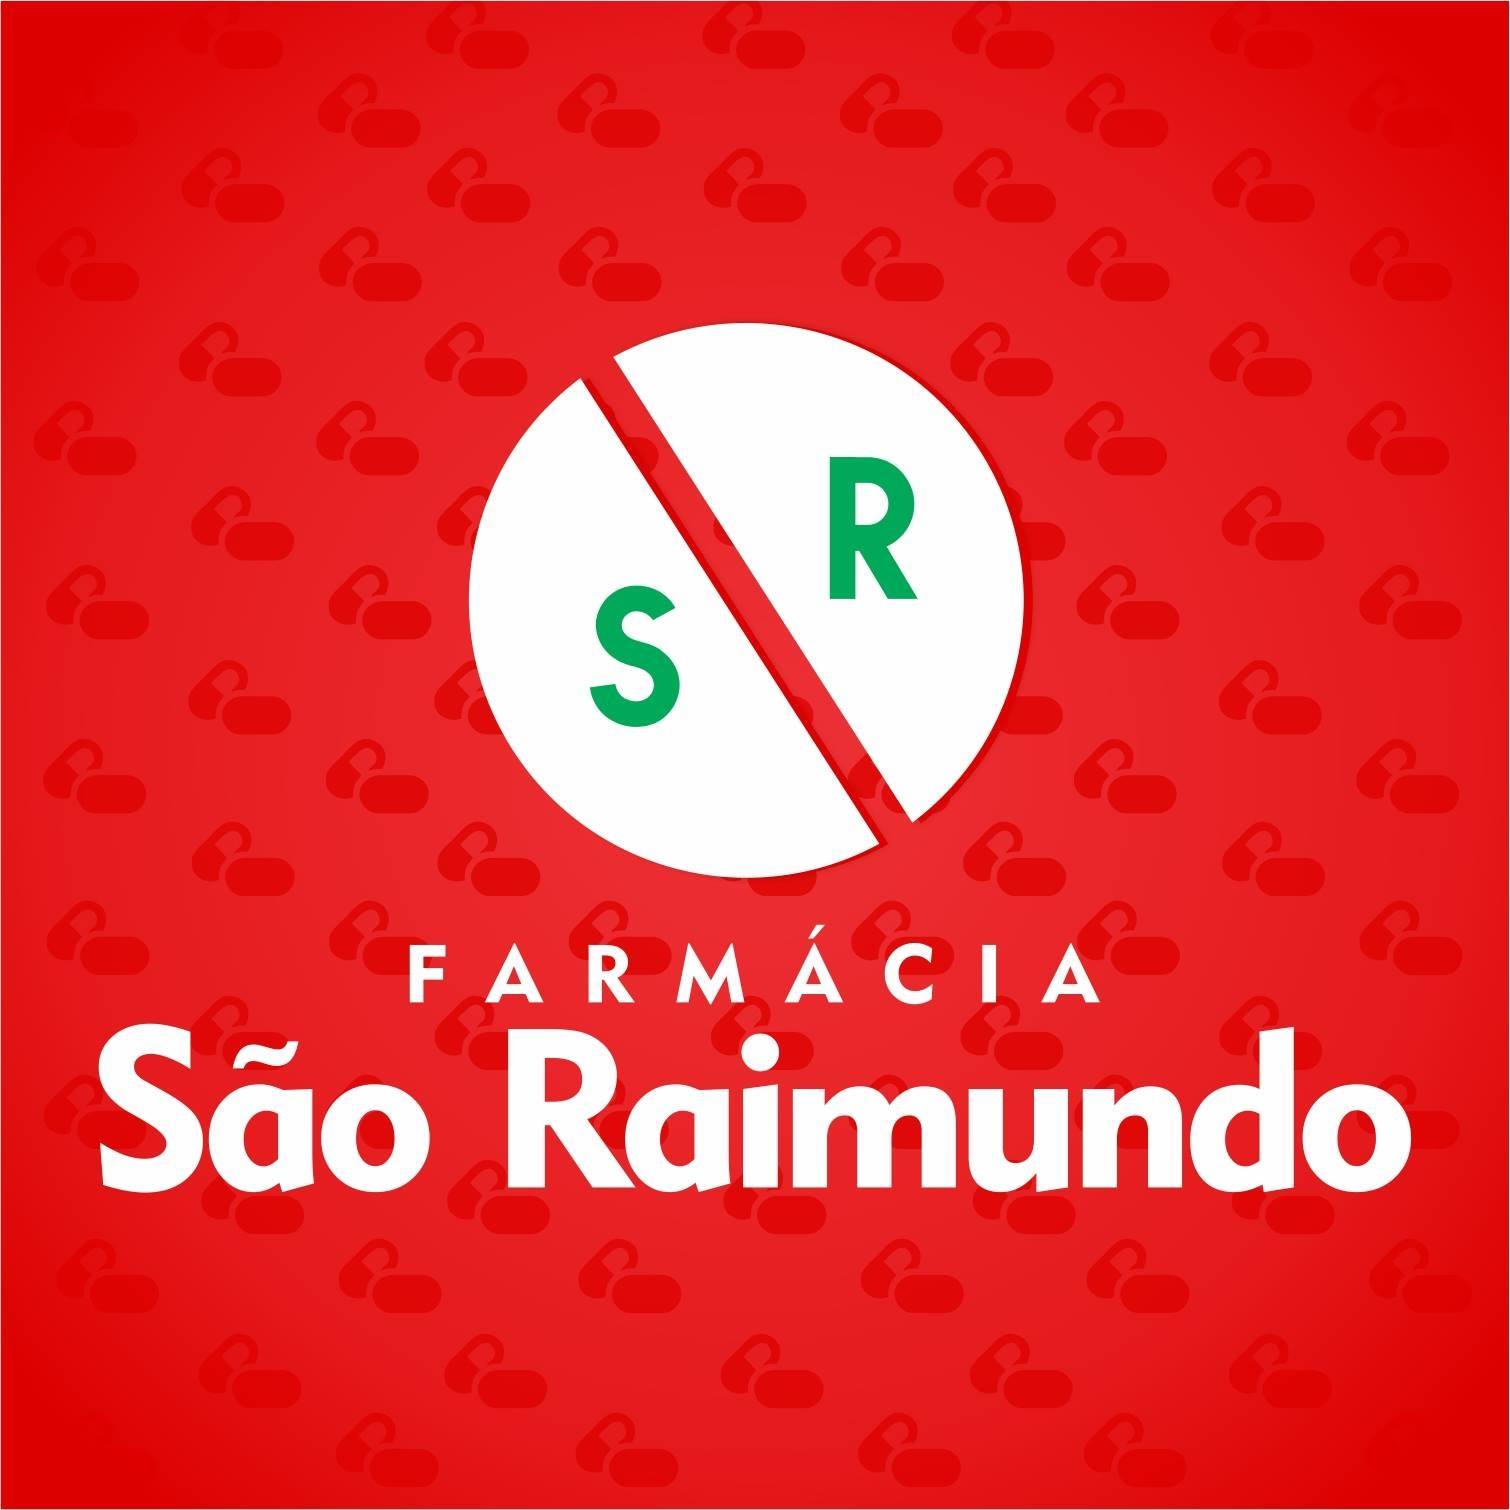 FARMÁCIA SÃO RAIMUNDO